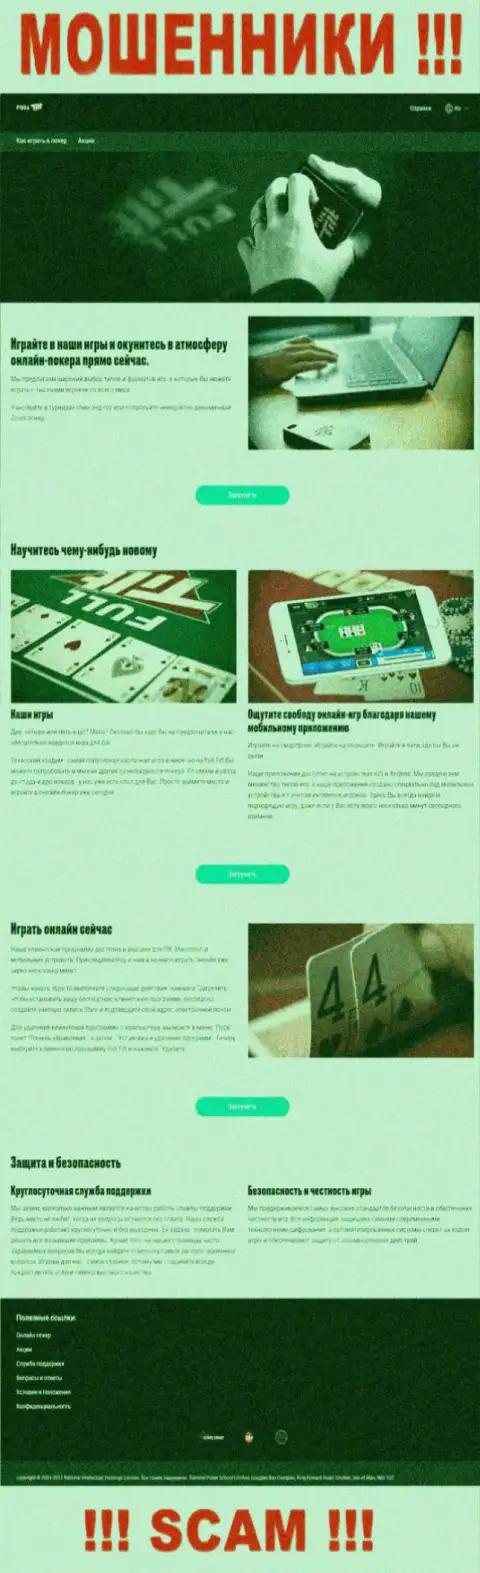 Фулл Тилт Покер используя свой сайт отлавливает наивных людей в свои сети